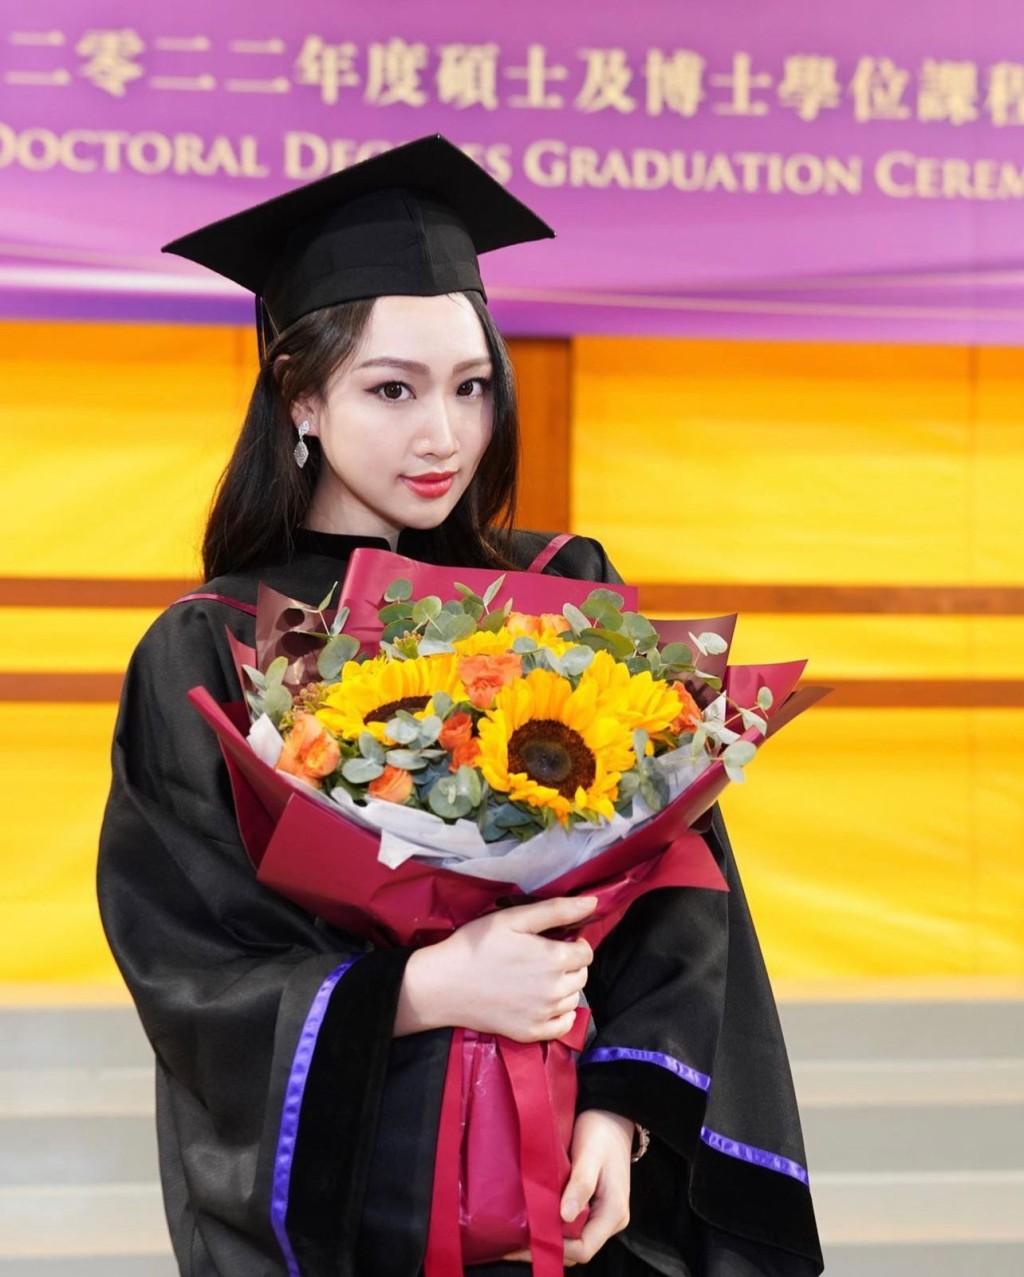 黄子桐毕业于香港大学，主修中文及犯罪学系，是一名女学霸。